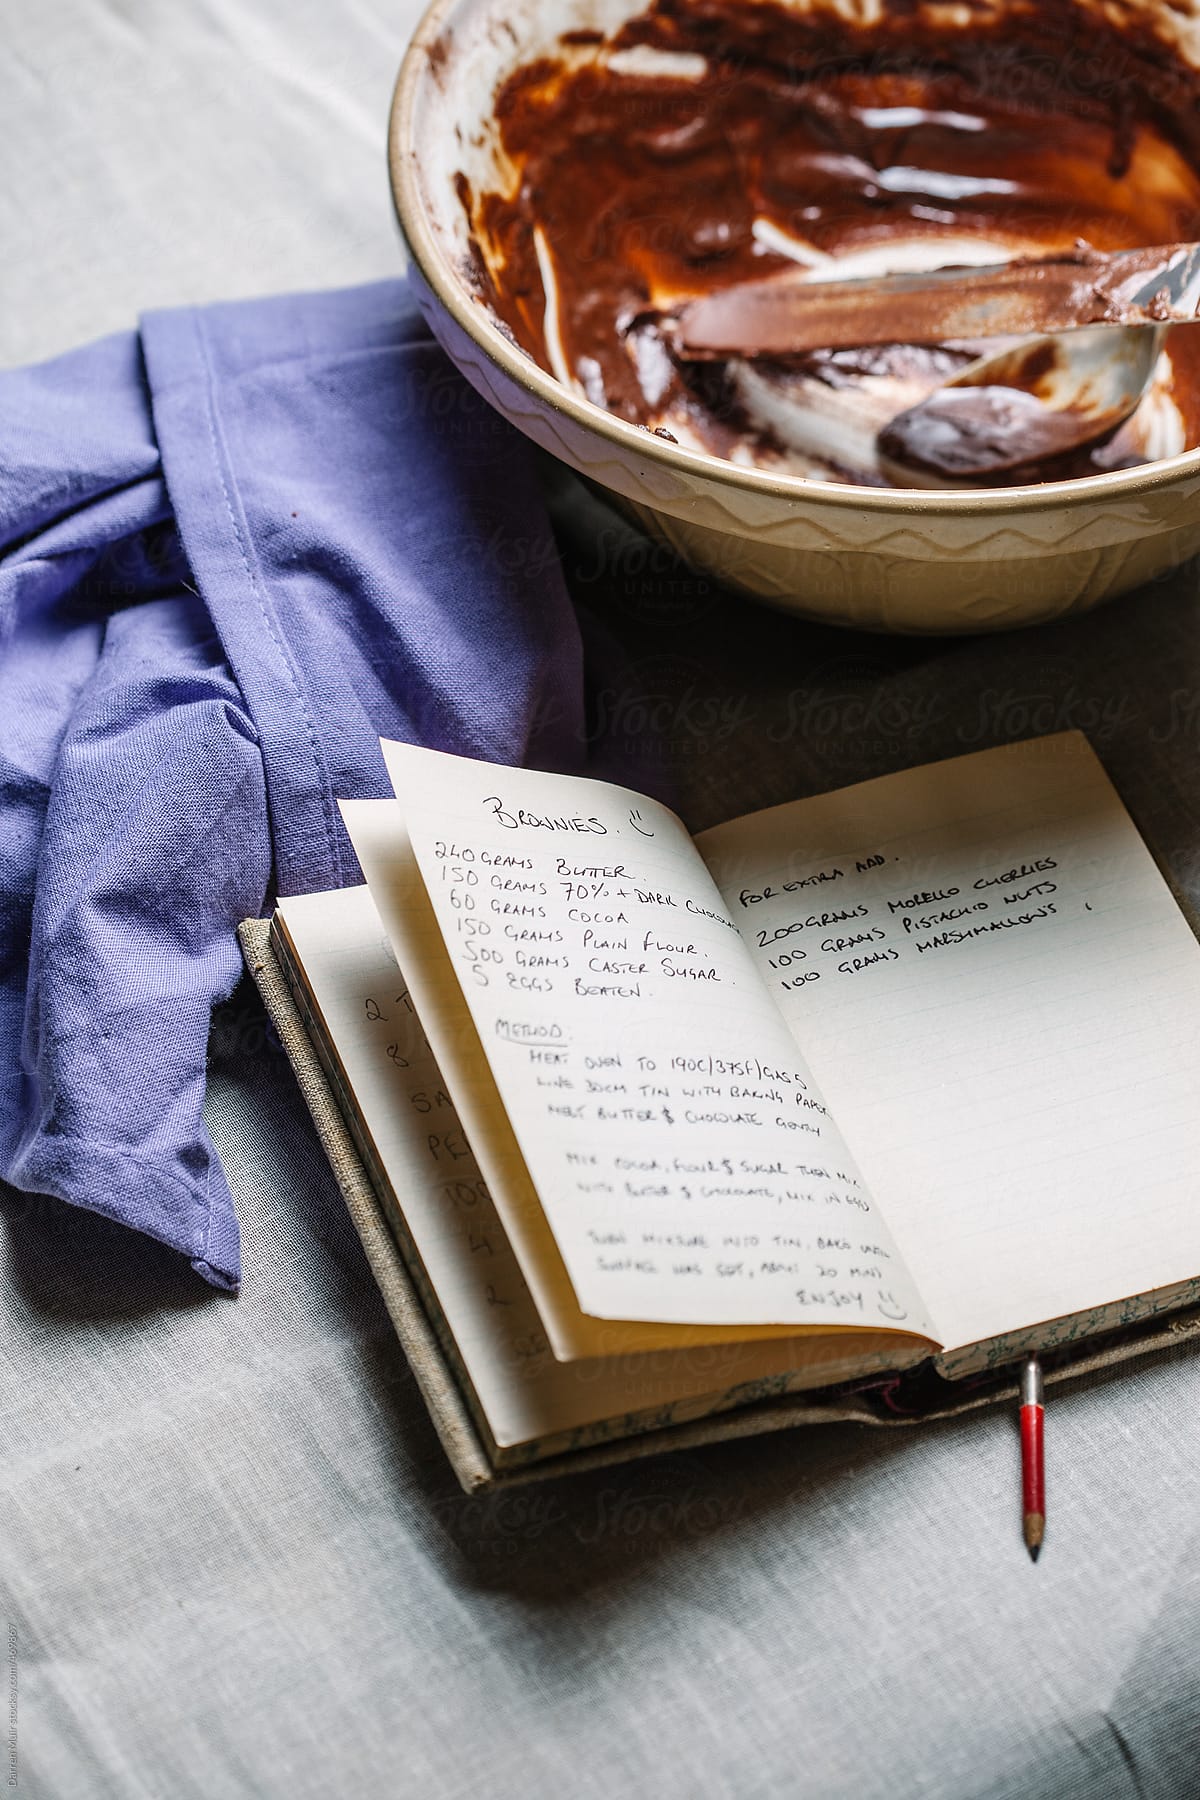 Chocolate brownie recipe in handwritten recipe book.